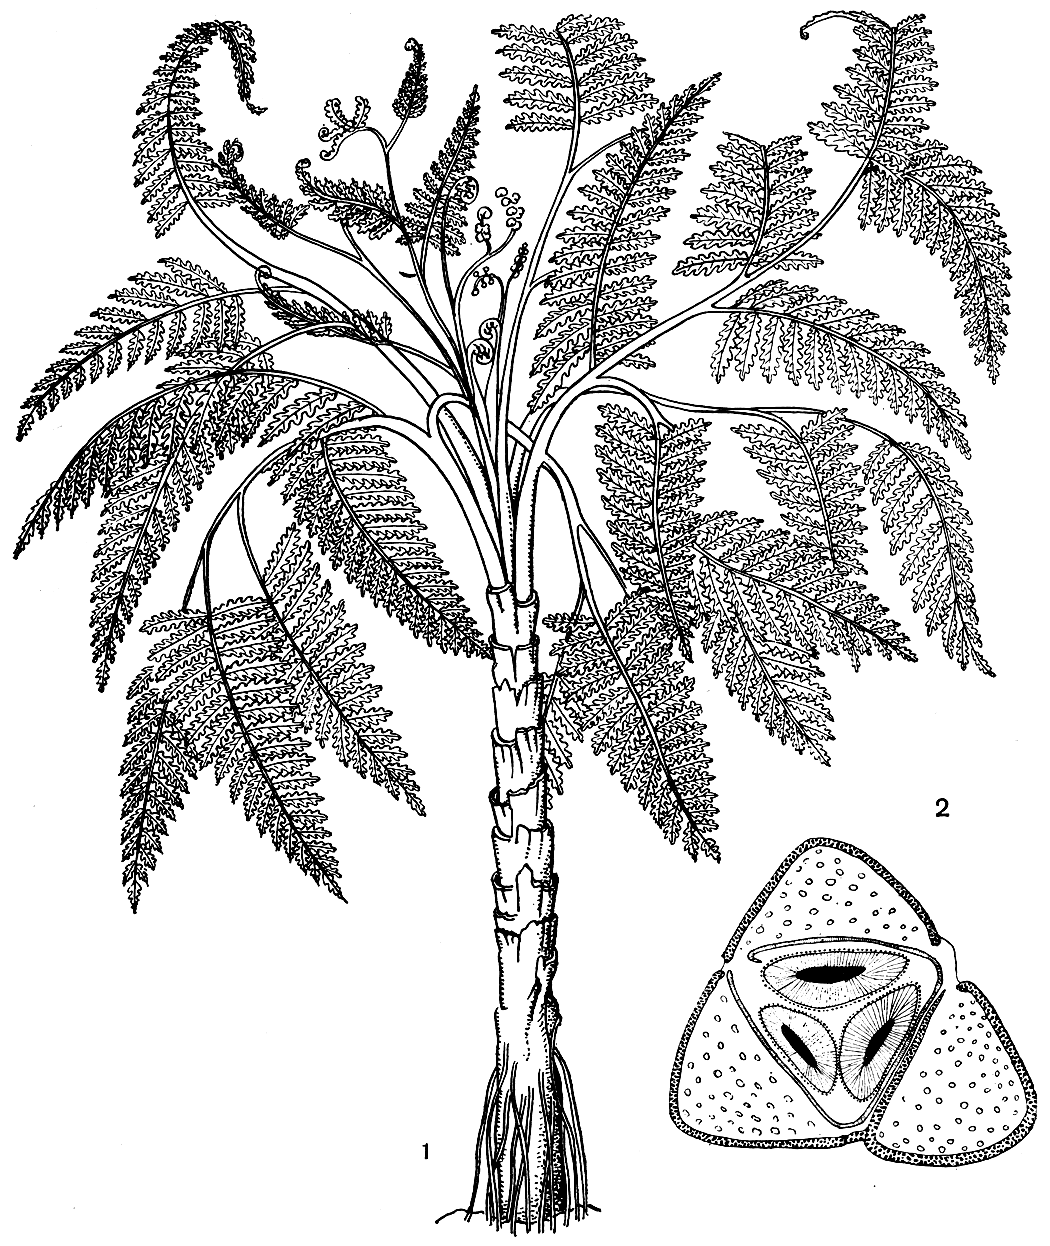 Рис. 159. Медуллоза Ноэ (Medullosa noei): 1 - общий вид, реконструкция; 2 - схема поперечного среза через стебель с тремя меристелами